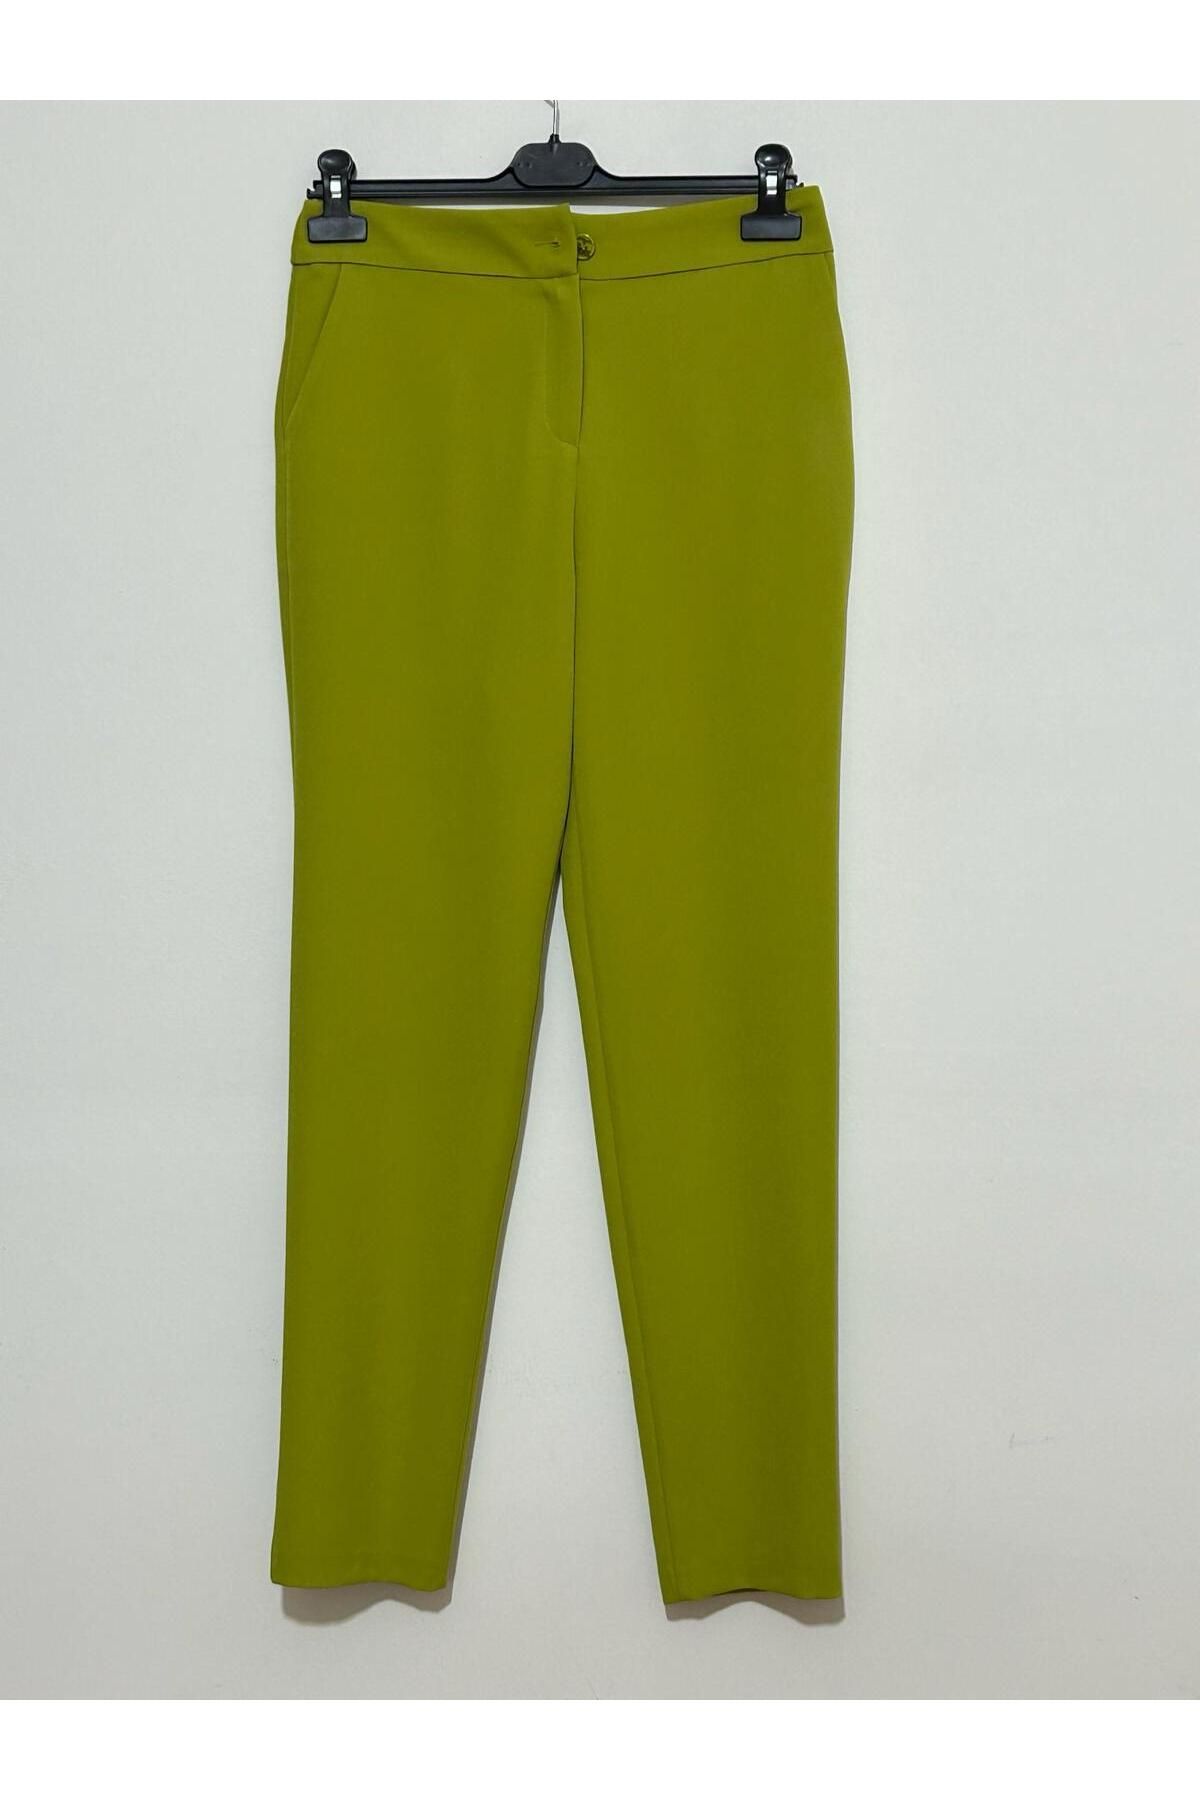 Milestone Yeşil Pantolon